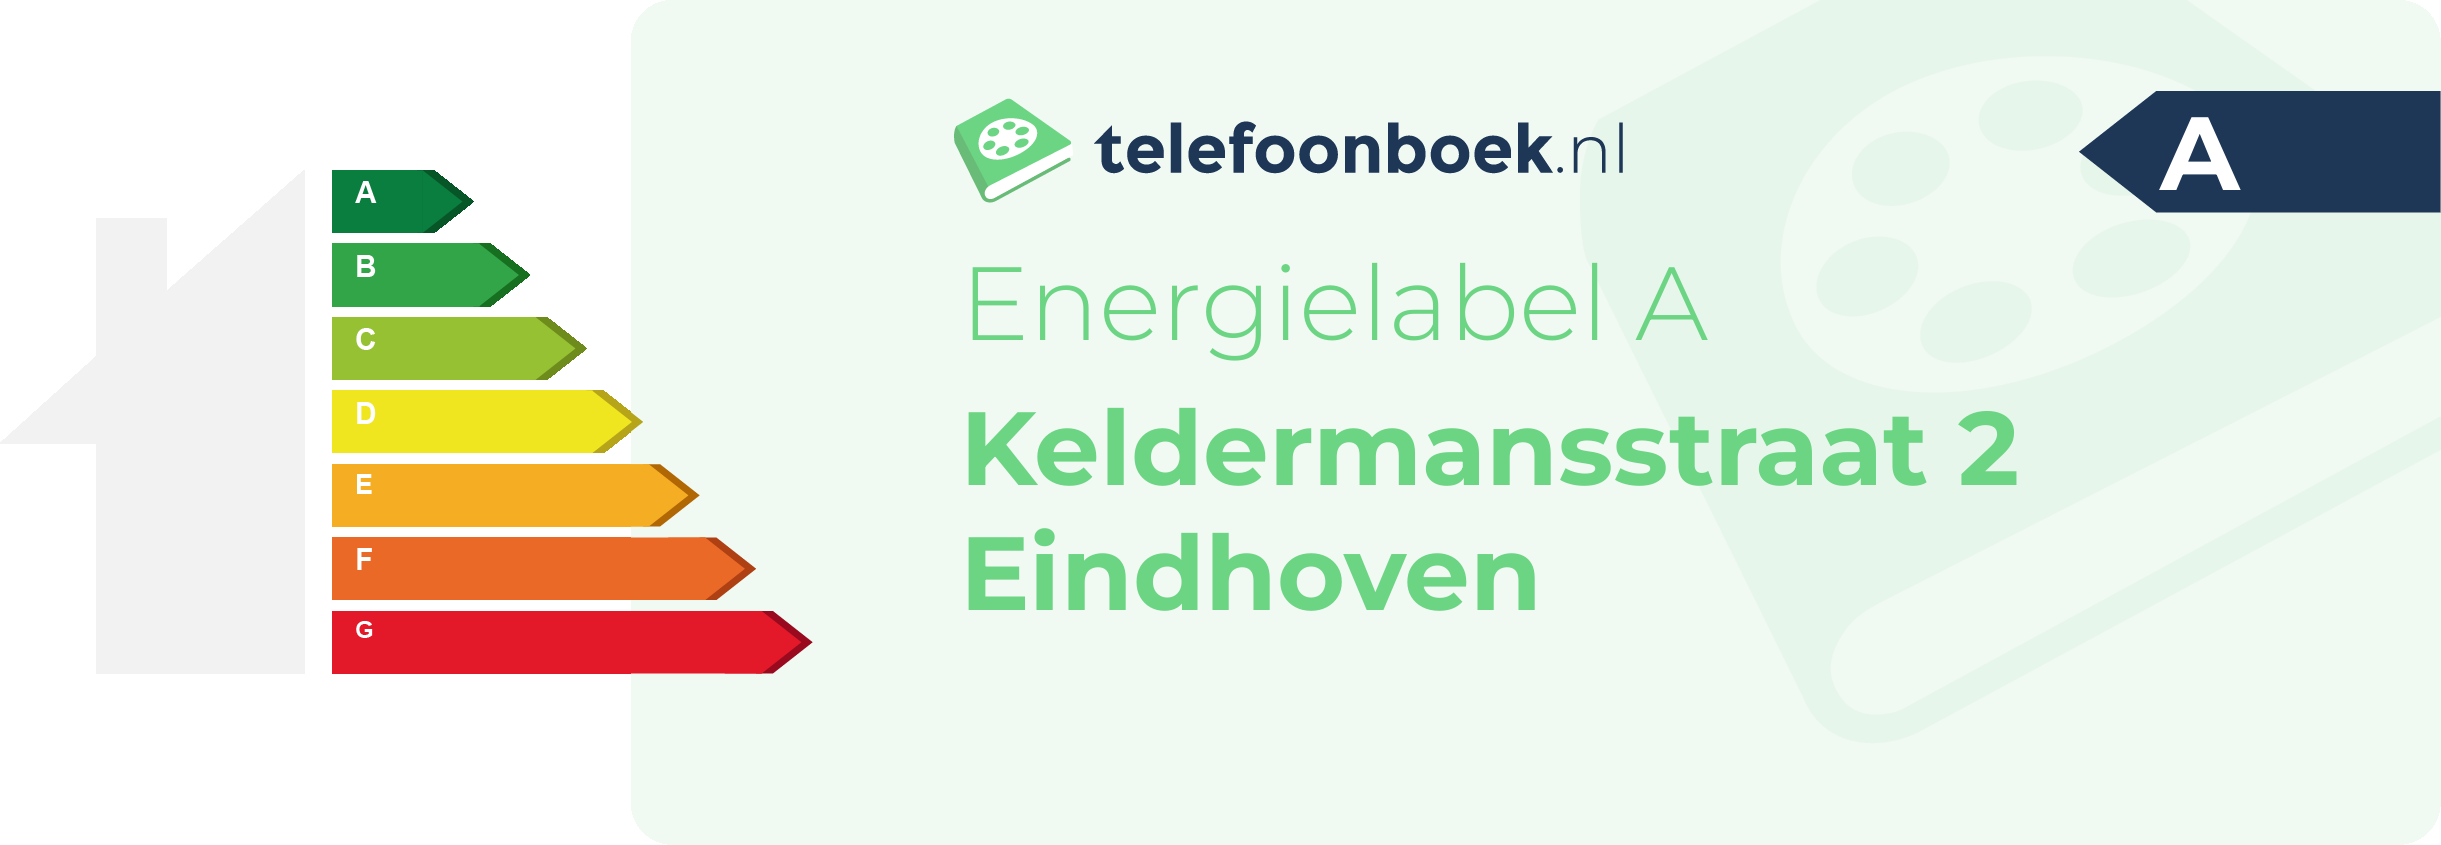 Energielabel Keldermansstraat 2 Eindhoven